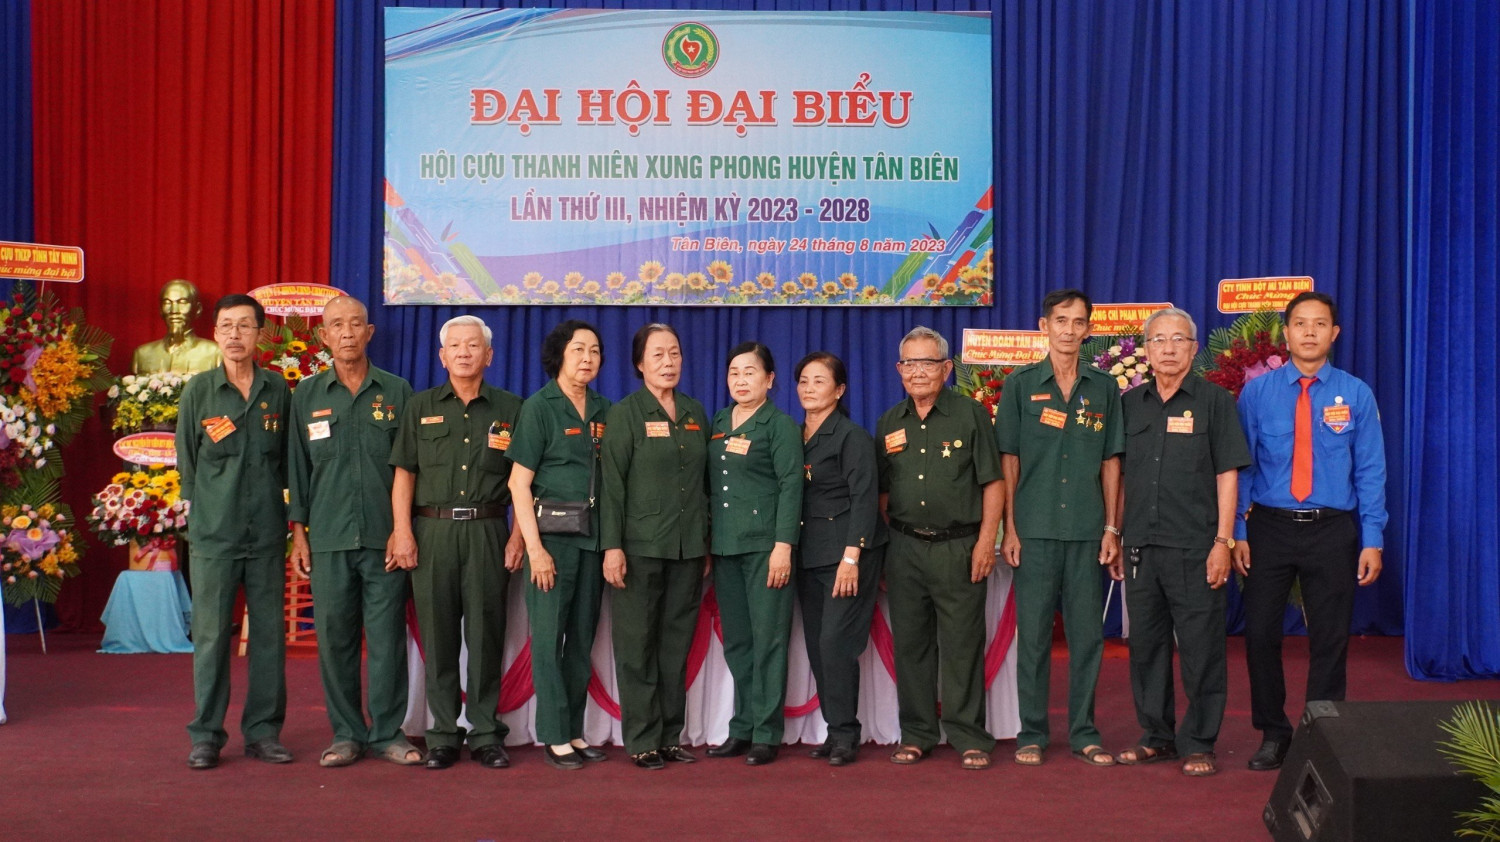 Đại hội đại biểu Hội cựu Thanh niên xung phong huyện Tân Biên, lần thứ III, nhiệm kỳ 2018-2028.